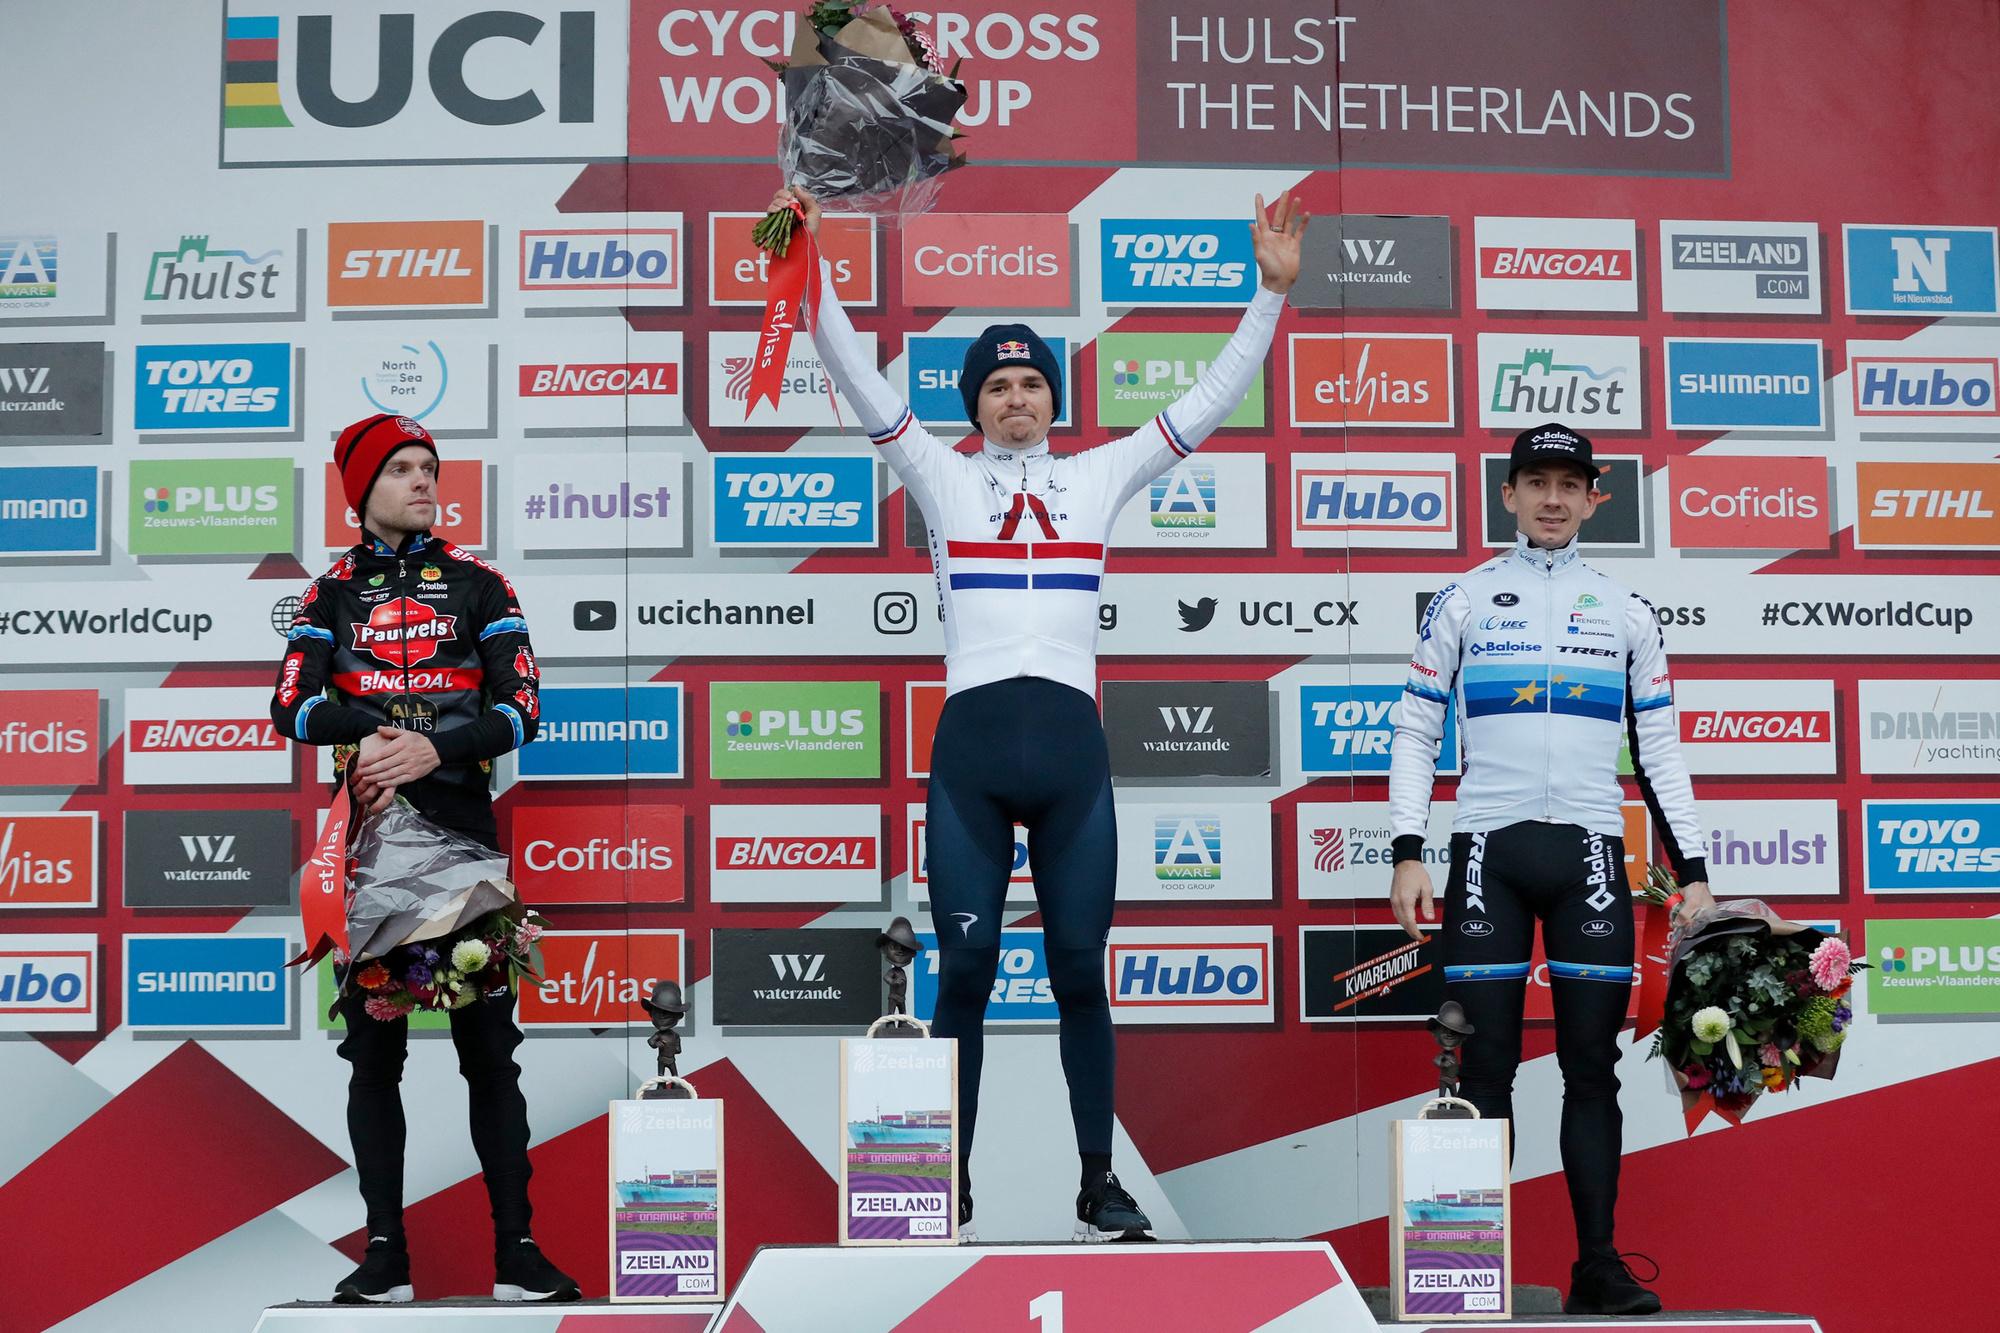 Het podium van de Wereldbekercross in Hulst met Eli Iserbyt (l), Tom Pidcock (m) en Lars van der Haar (r)